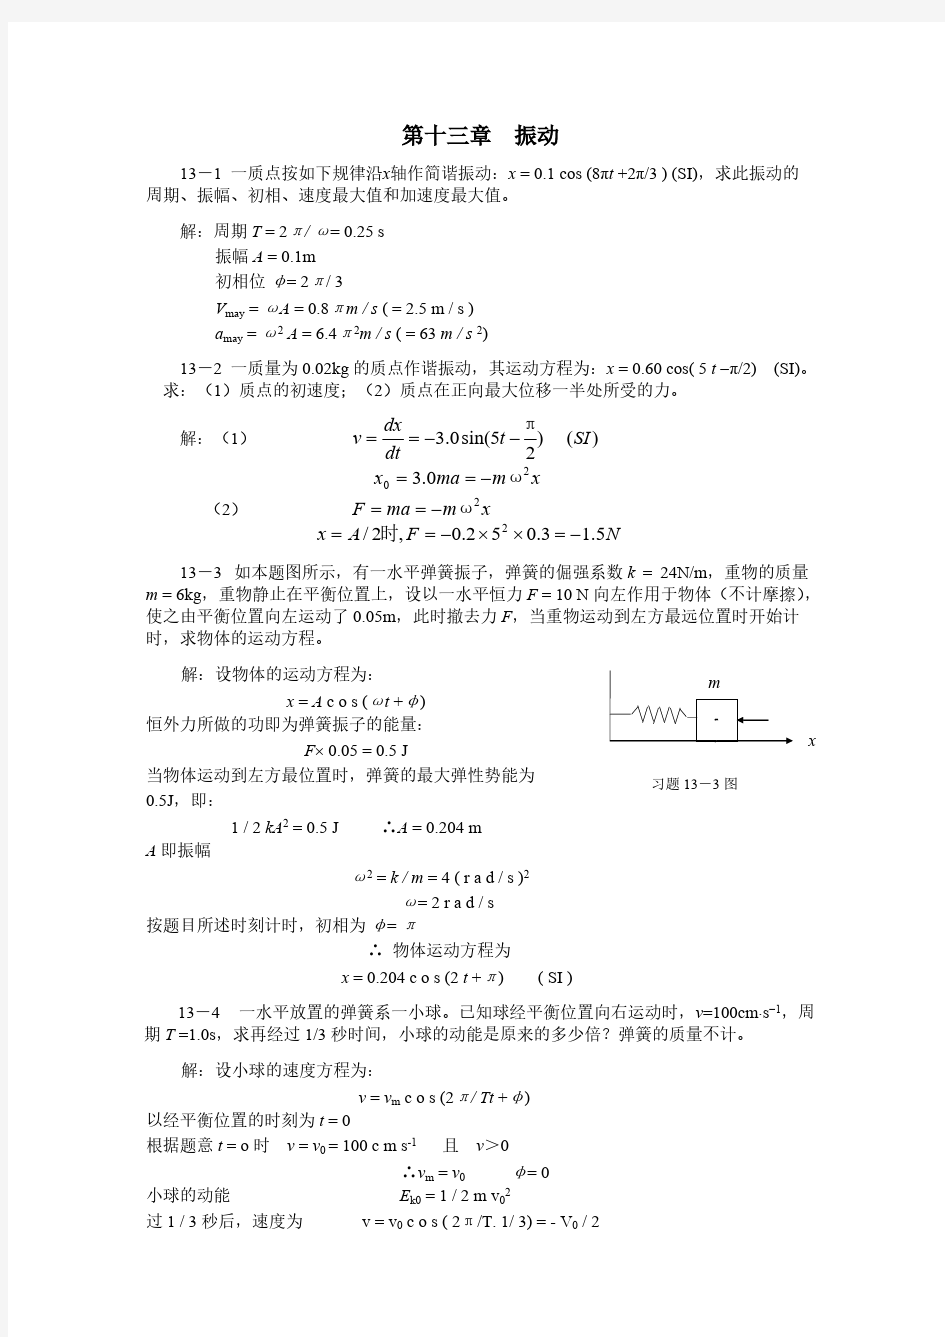 大学物理(许瑞珍_贾谊明) 第13章答案-推荐下载